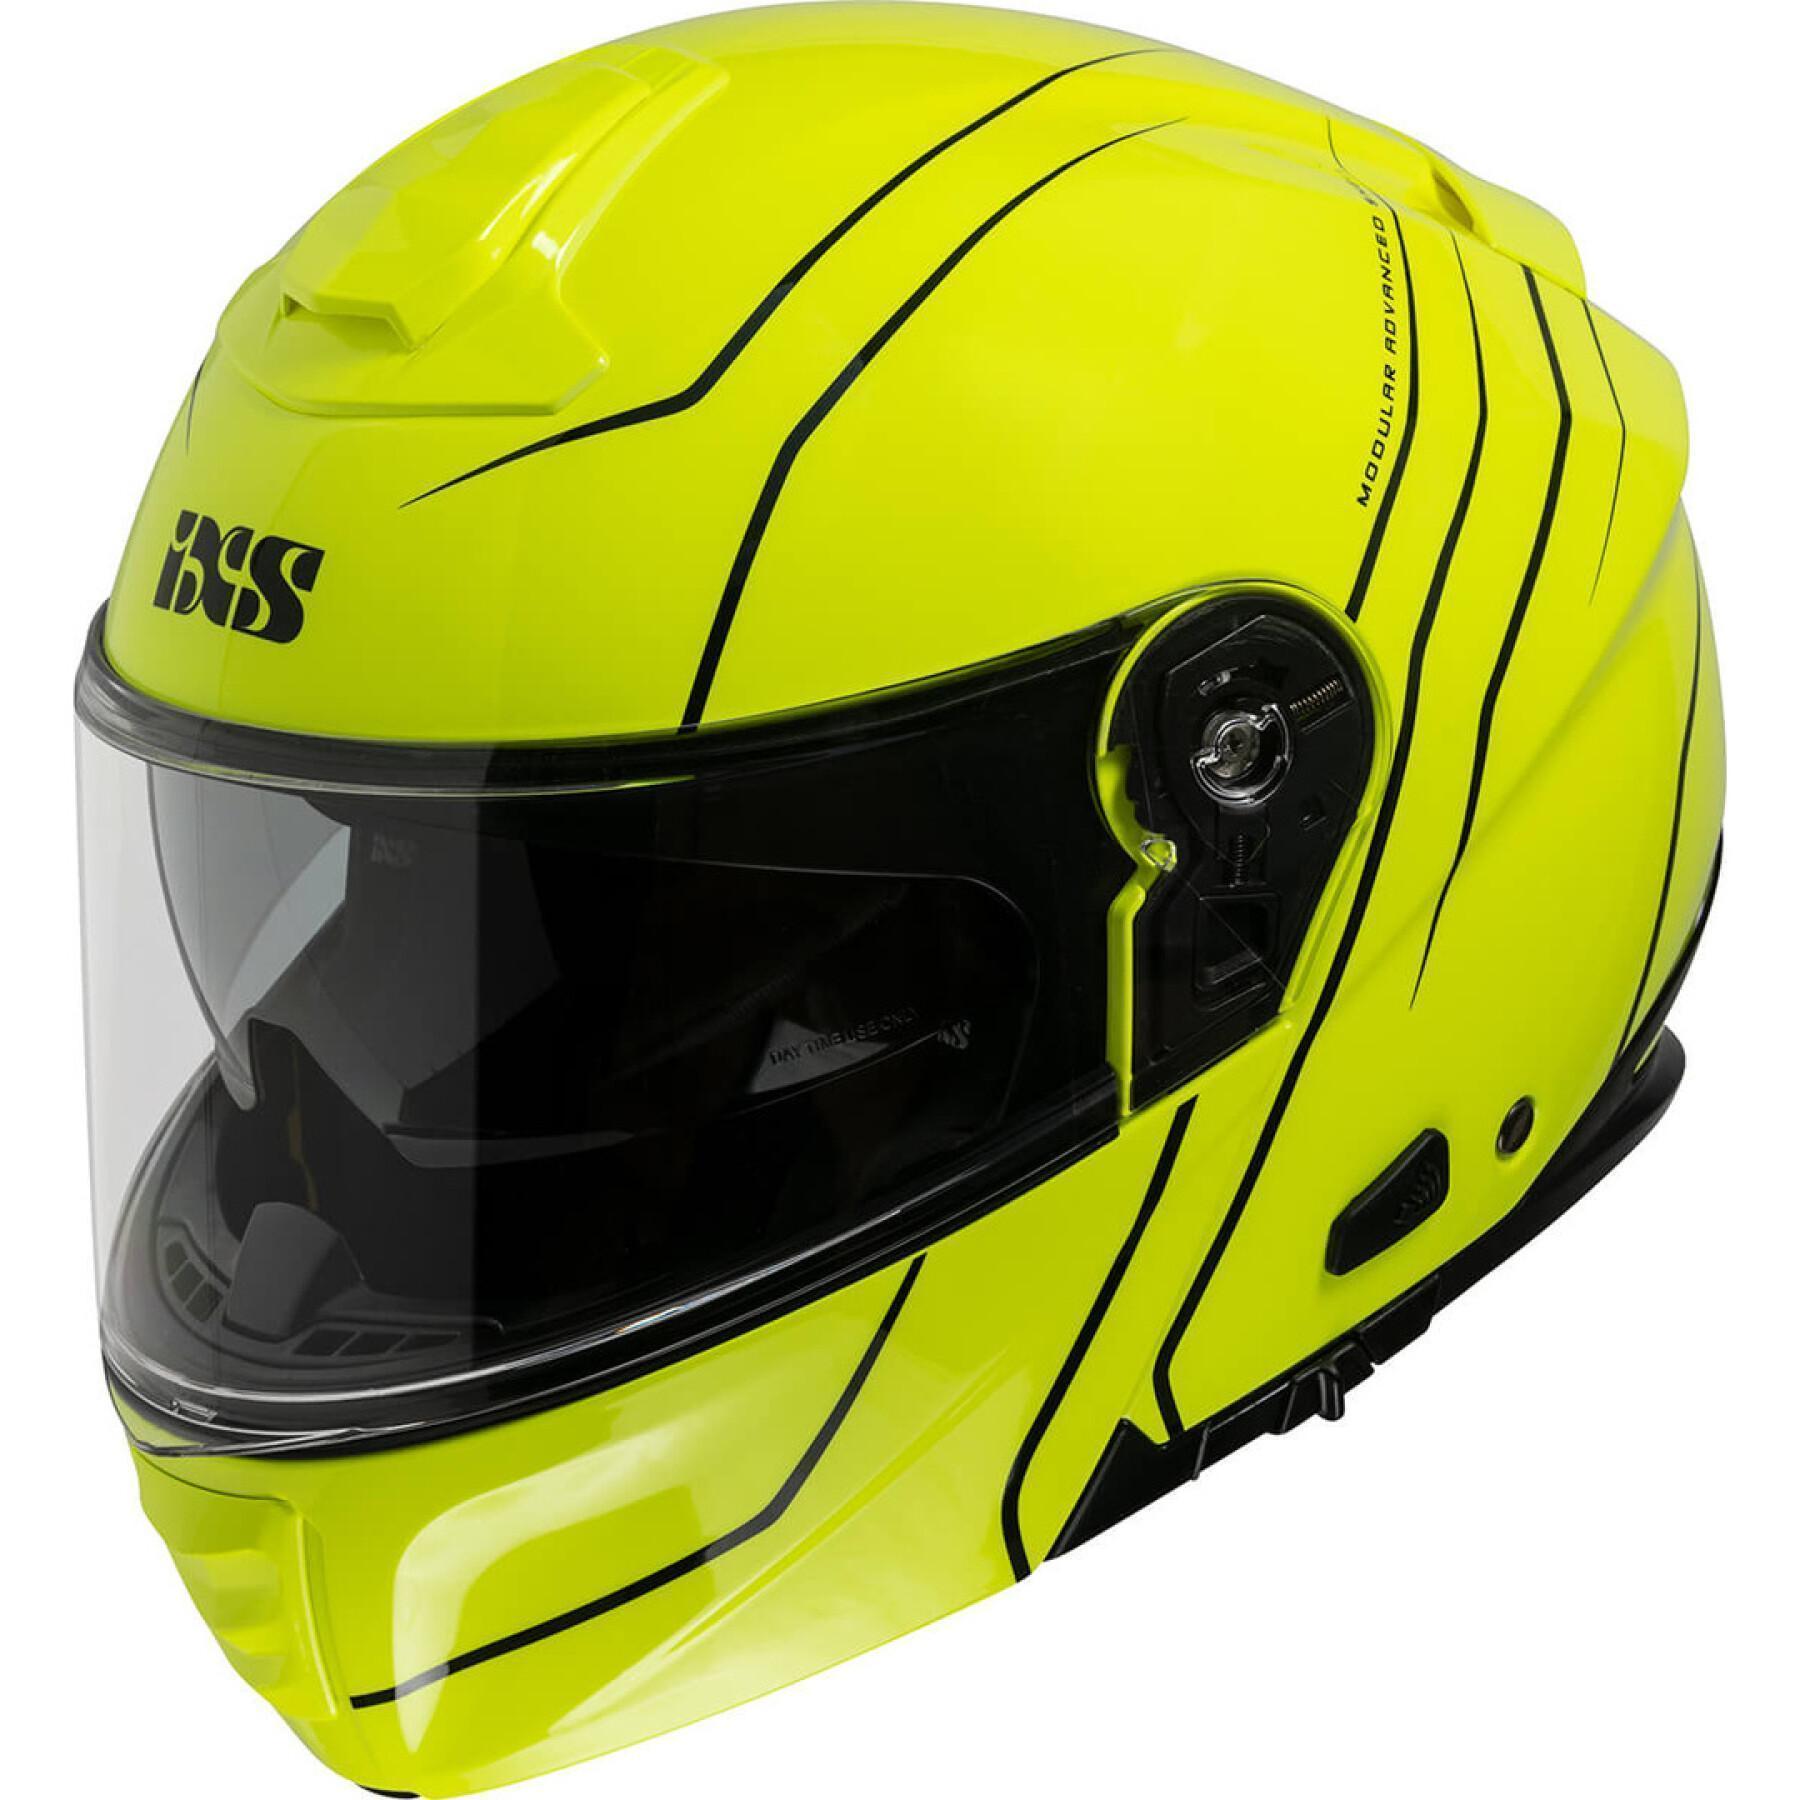 Modułowy kask motocyklowy IXS460 FG 2.0